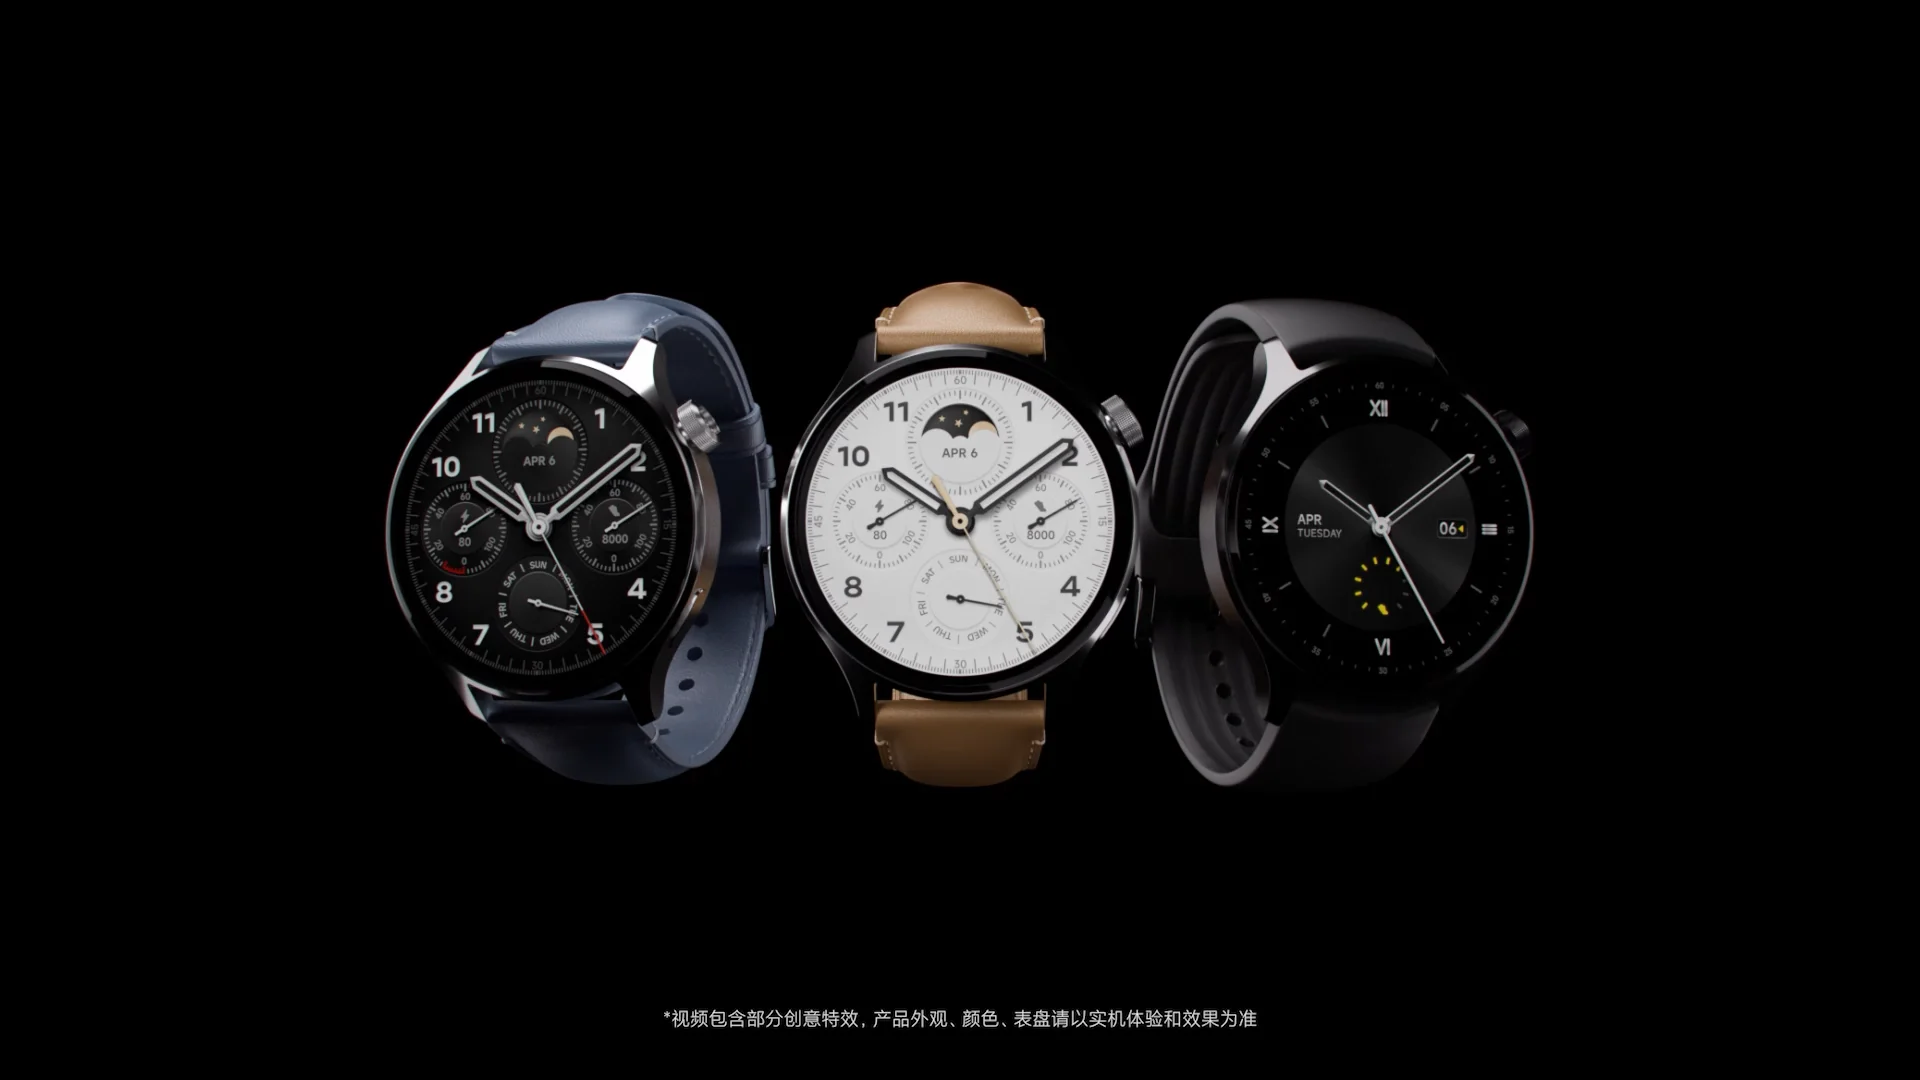 Xiaomi watch 5. Xiaomi watch s1 Pro. Xiaomi watch s1. Xiaomi watch 2 Pro. Xiaomi watch s1 Pro Global.